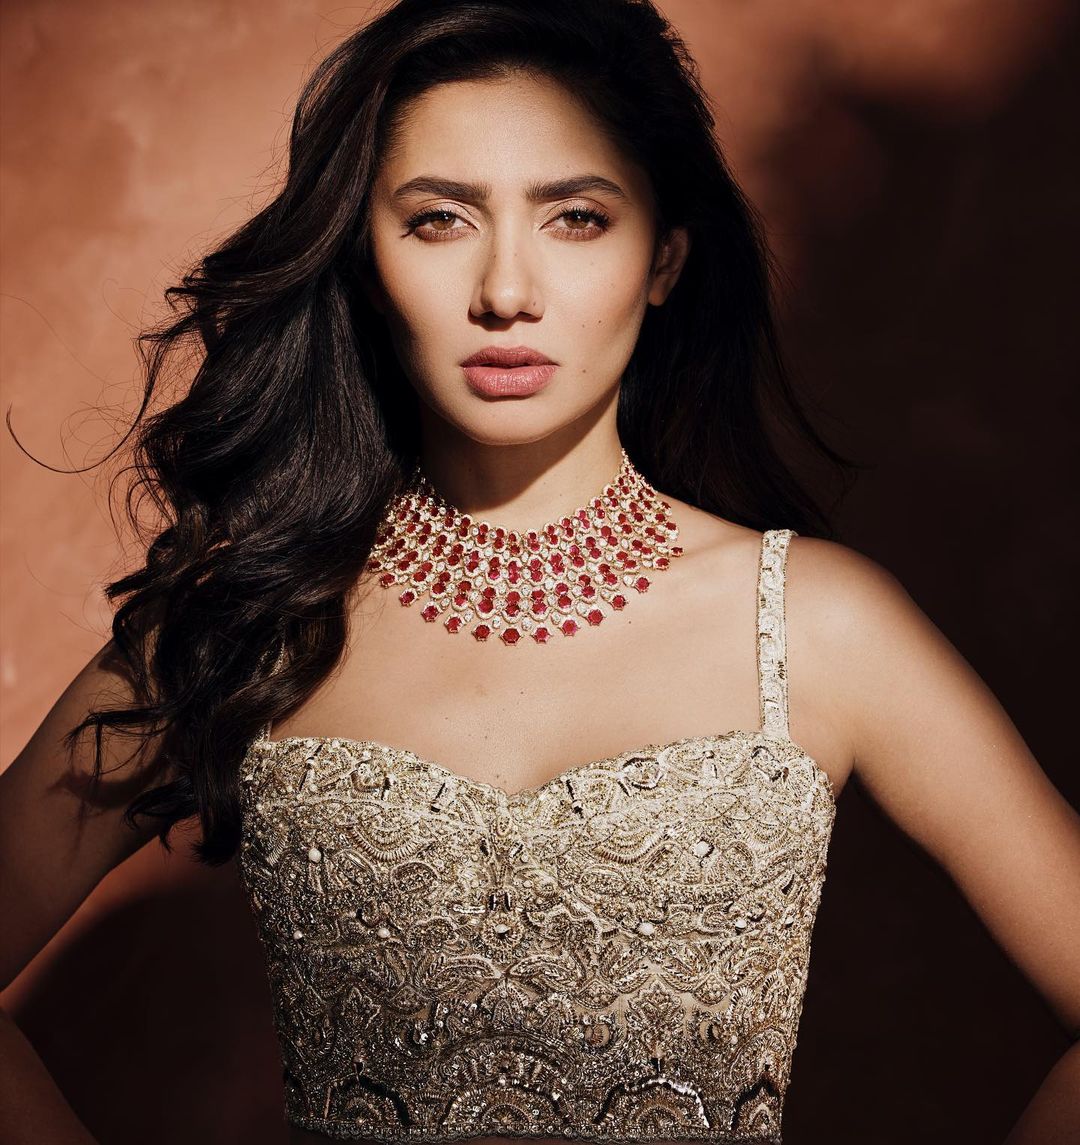 Азиатские знаменитости возглавили список 15 самых красивых женщин мира 2022 года по результатам более 600 000 голосов